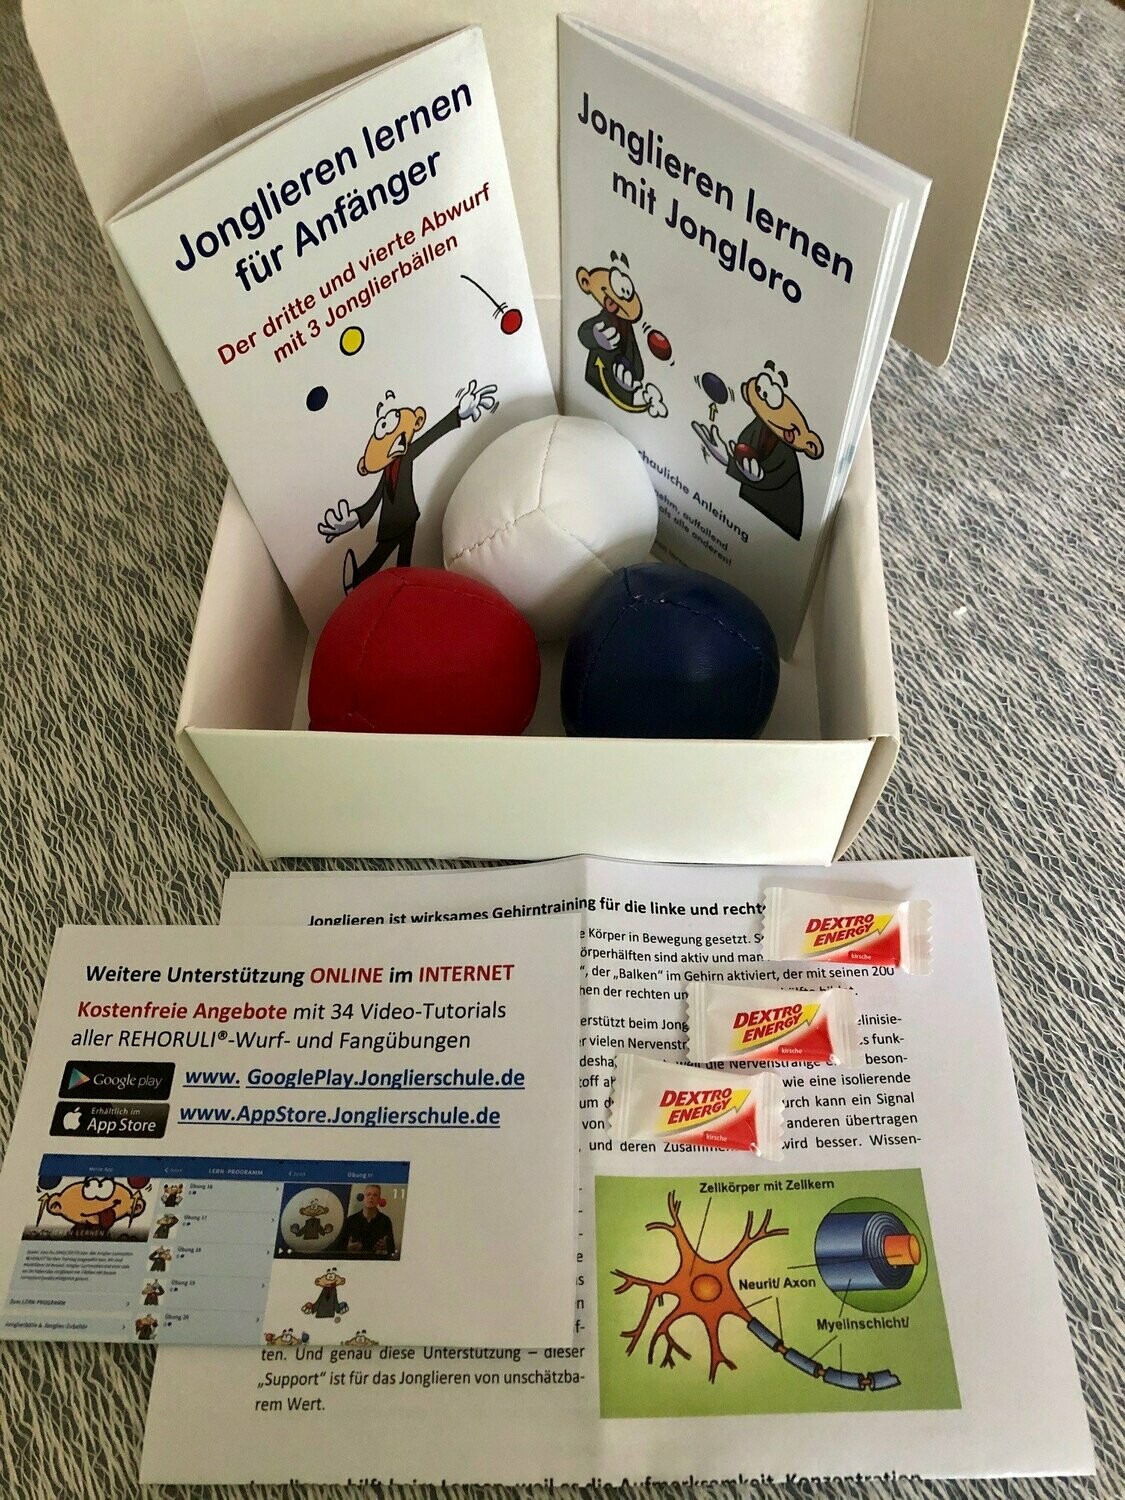 Power-Box Jonglieren - 3 Jonglierbälle M (Ballfarben: weiß/rot/blau) inkl. Jonglier-Anleitung + Gutscheincode für Video-Tutorials